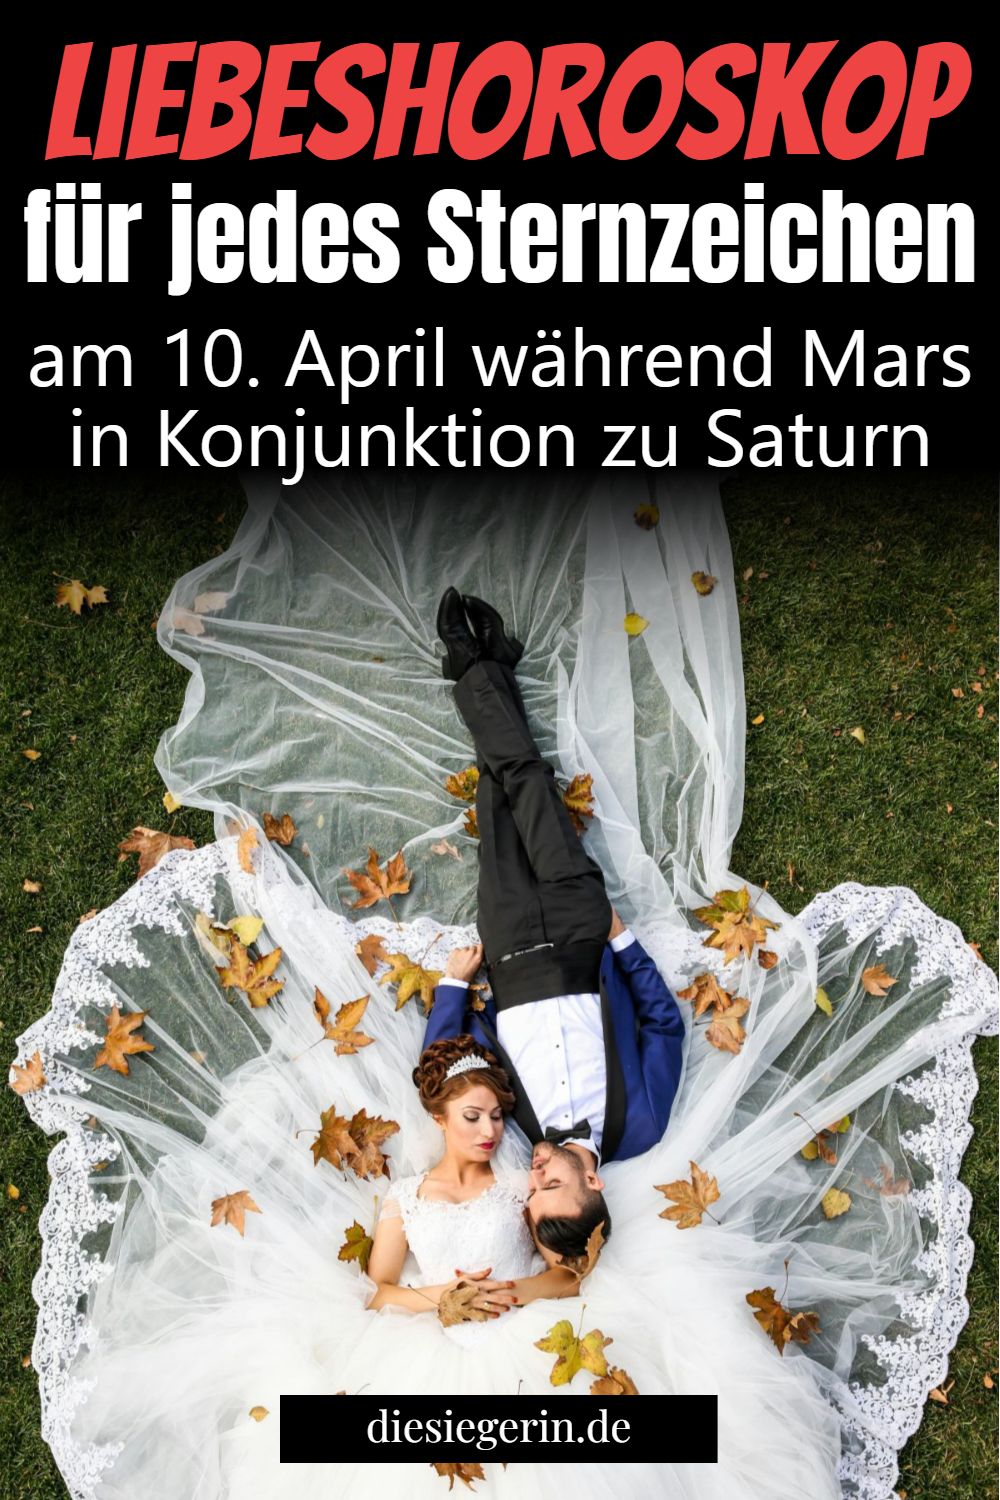 Liebeshoroskop für jedes Sternzeichen am 10. April während Mars in Konjunktion zu Saturn